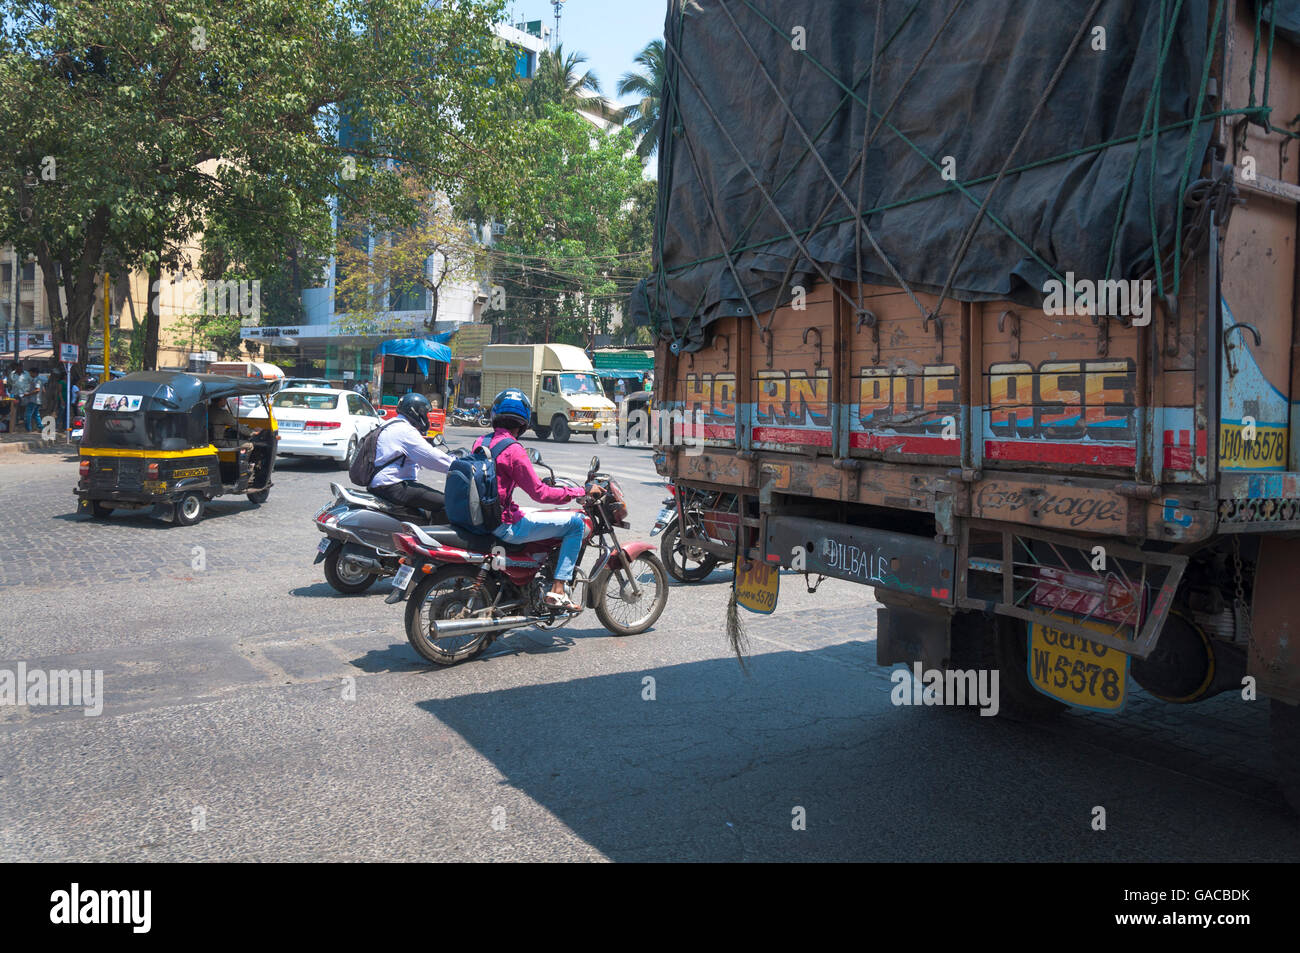 Traffic in Mumbai, India Stock Photo